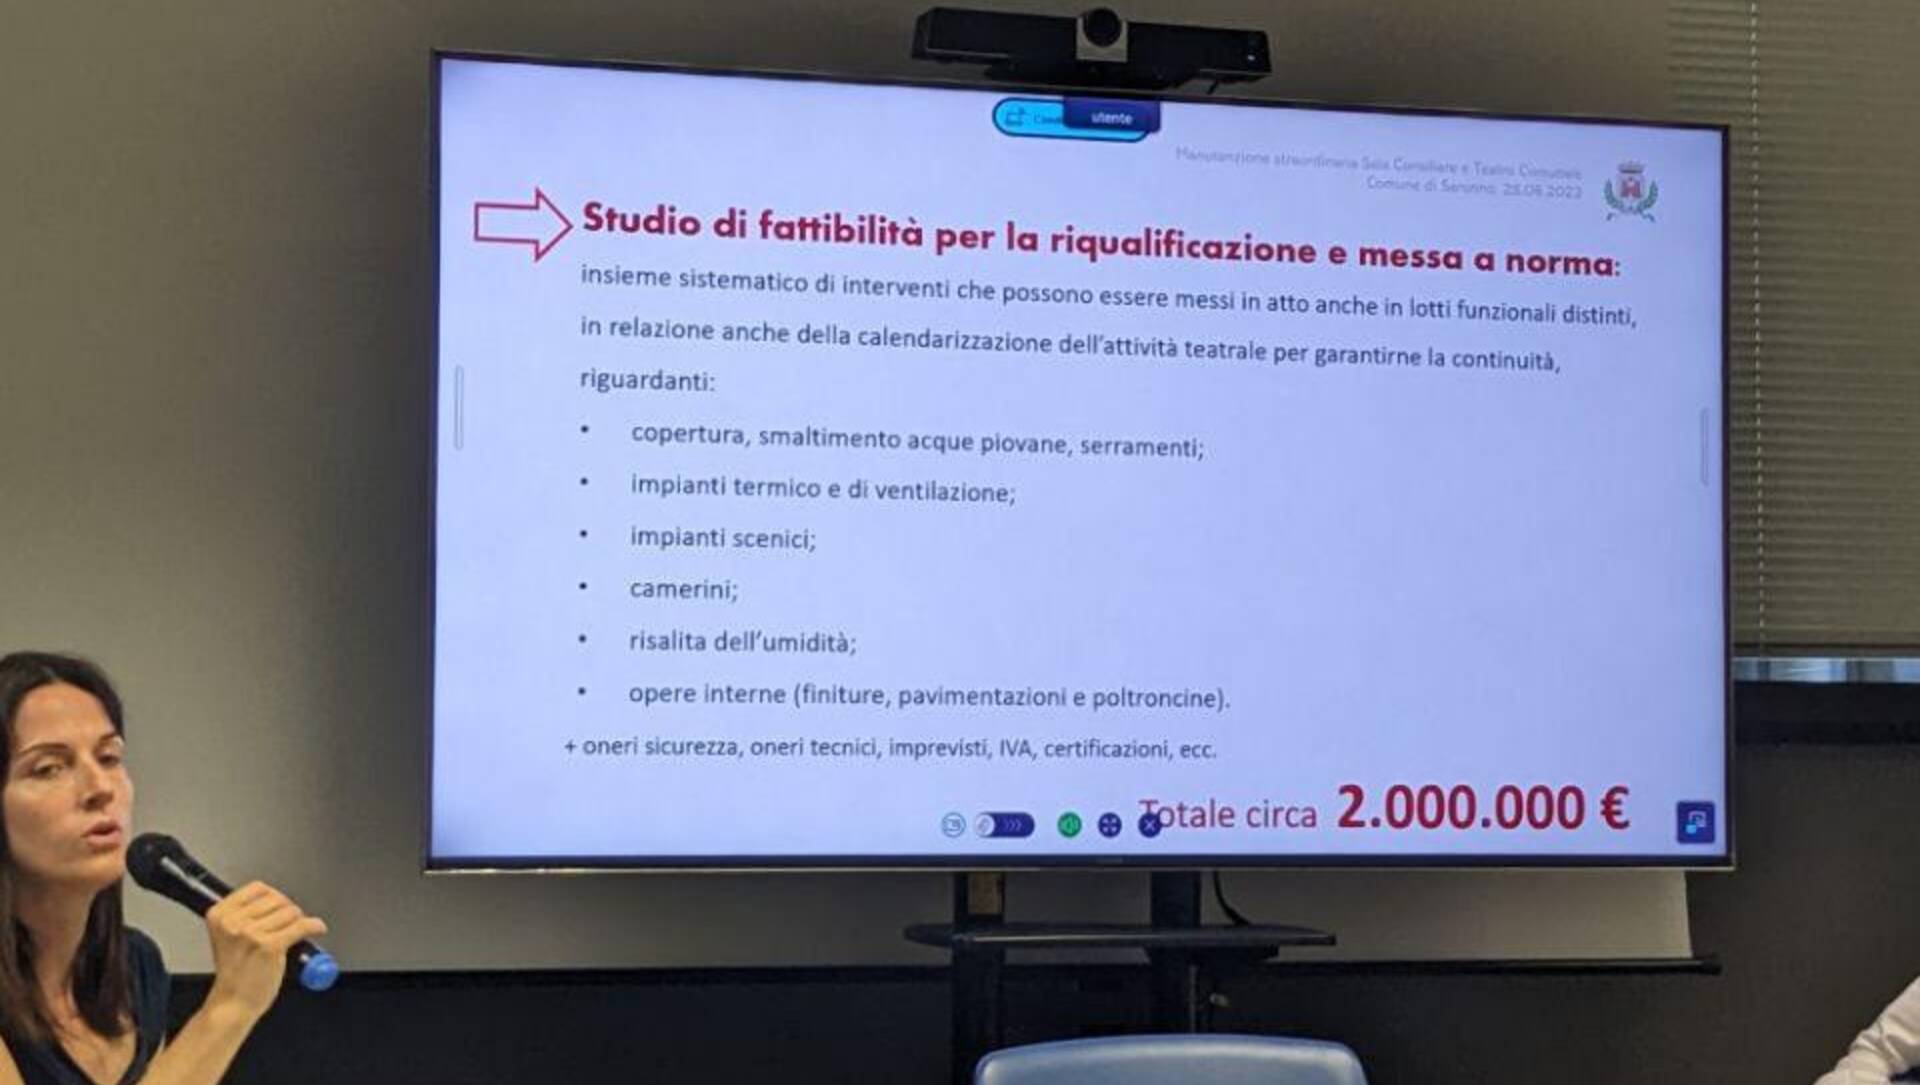 Teatro Pasta, Pozzoli: “Per la riqualificazione e la messa a norma servono 2 milioni di euro. Ecco i primi interventi”